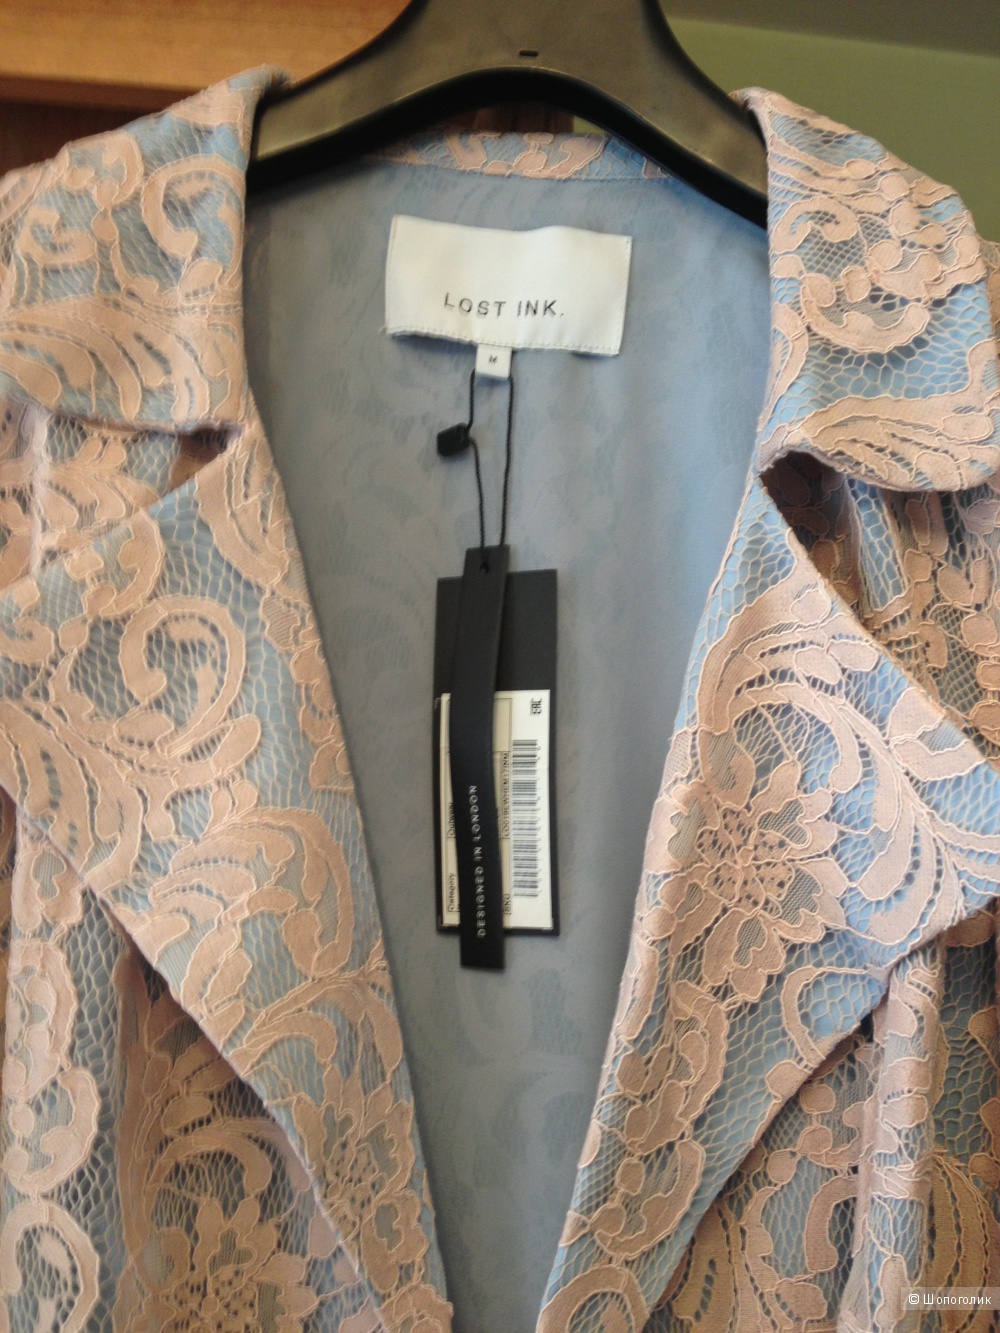 Кружевной oversize-пиджак Lost Ink, с ASOS, размер М, на 42-44 рус, новый, с этикетками